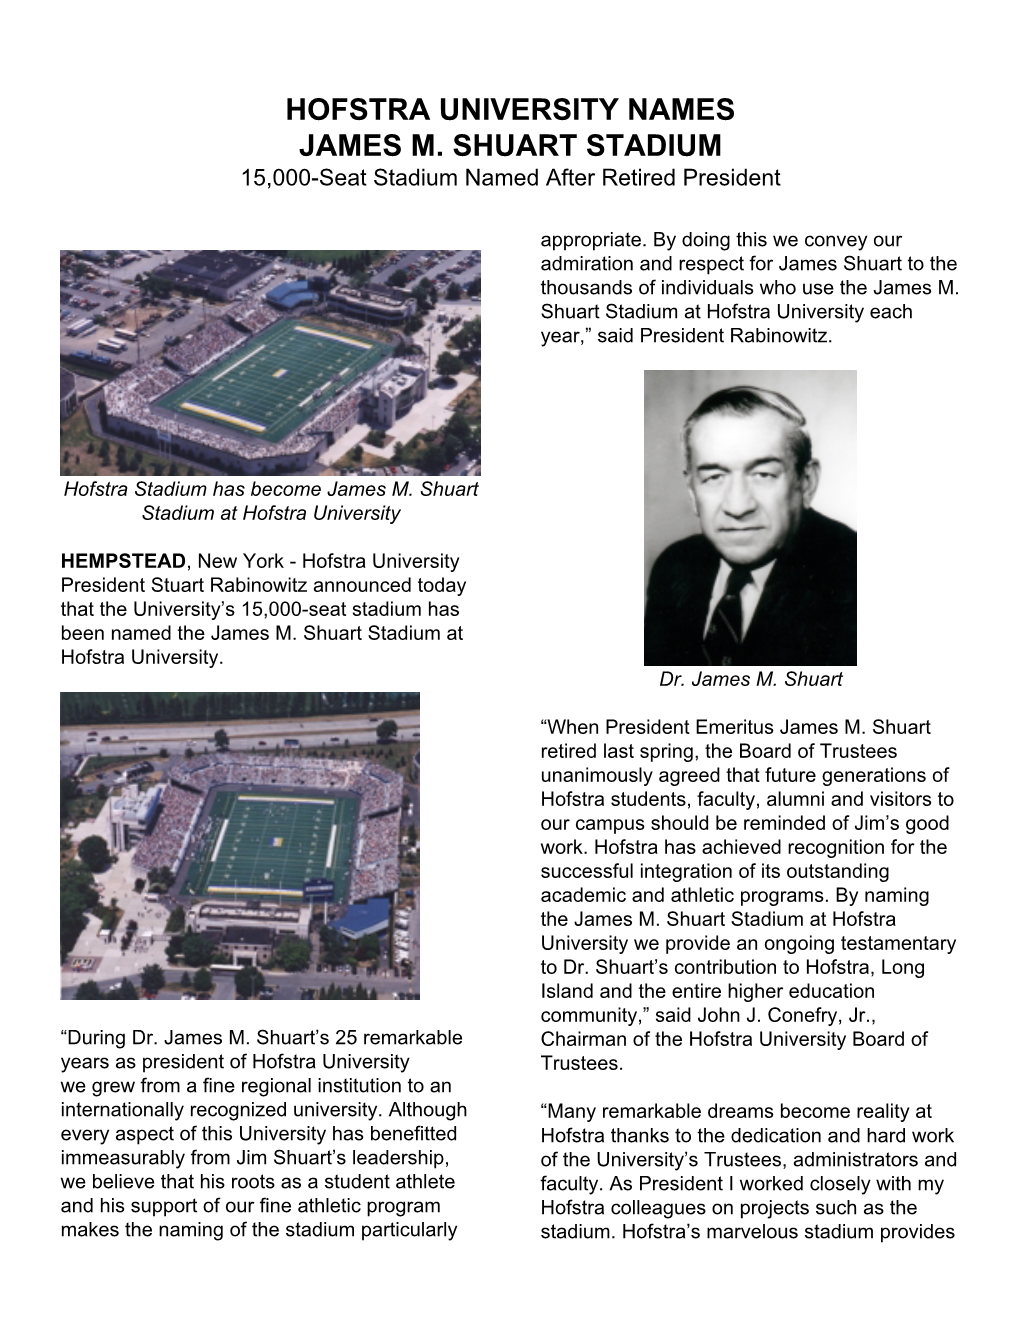 HOFSTRA UNIVERSITY NAMES JAMES M. SHUART STADIUM 15,000-Seat Stadium Named After Retired President